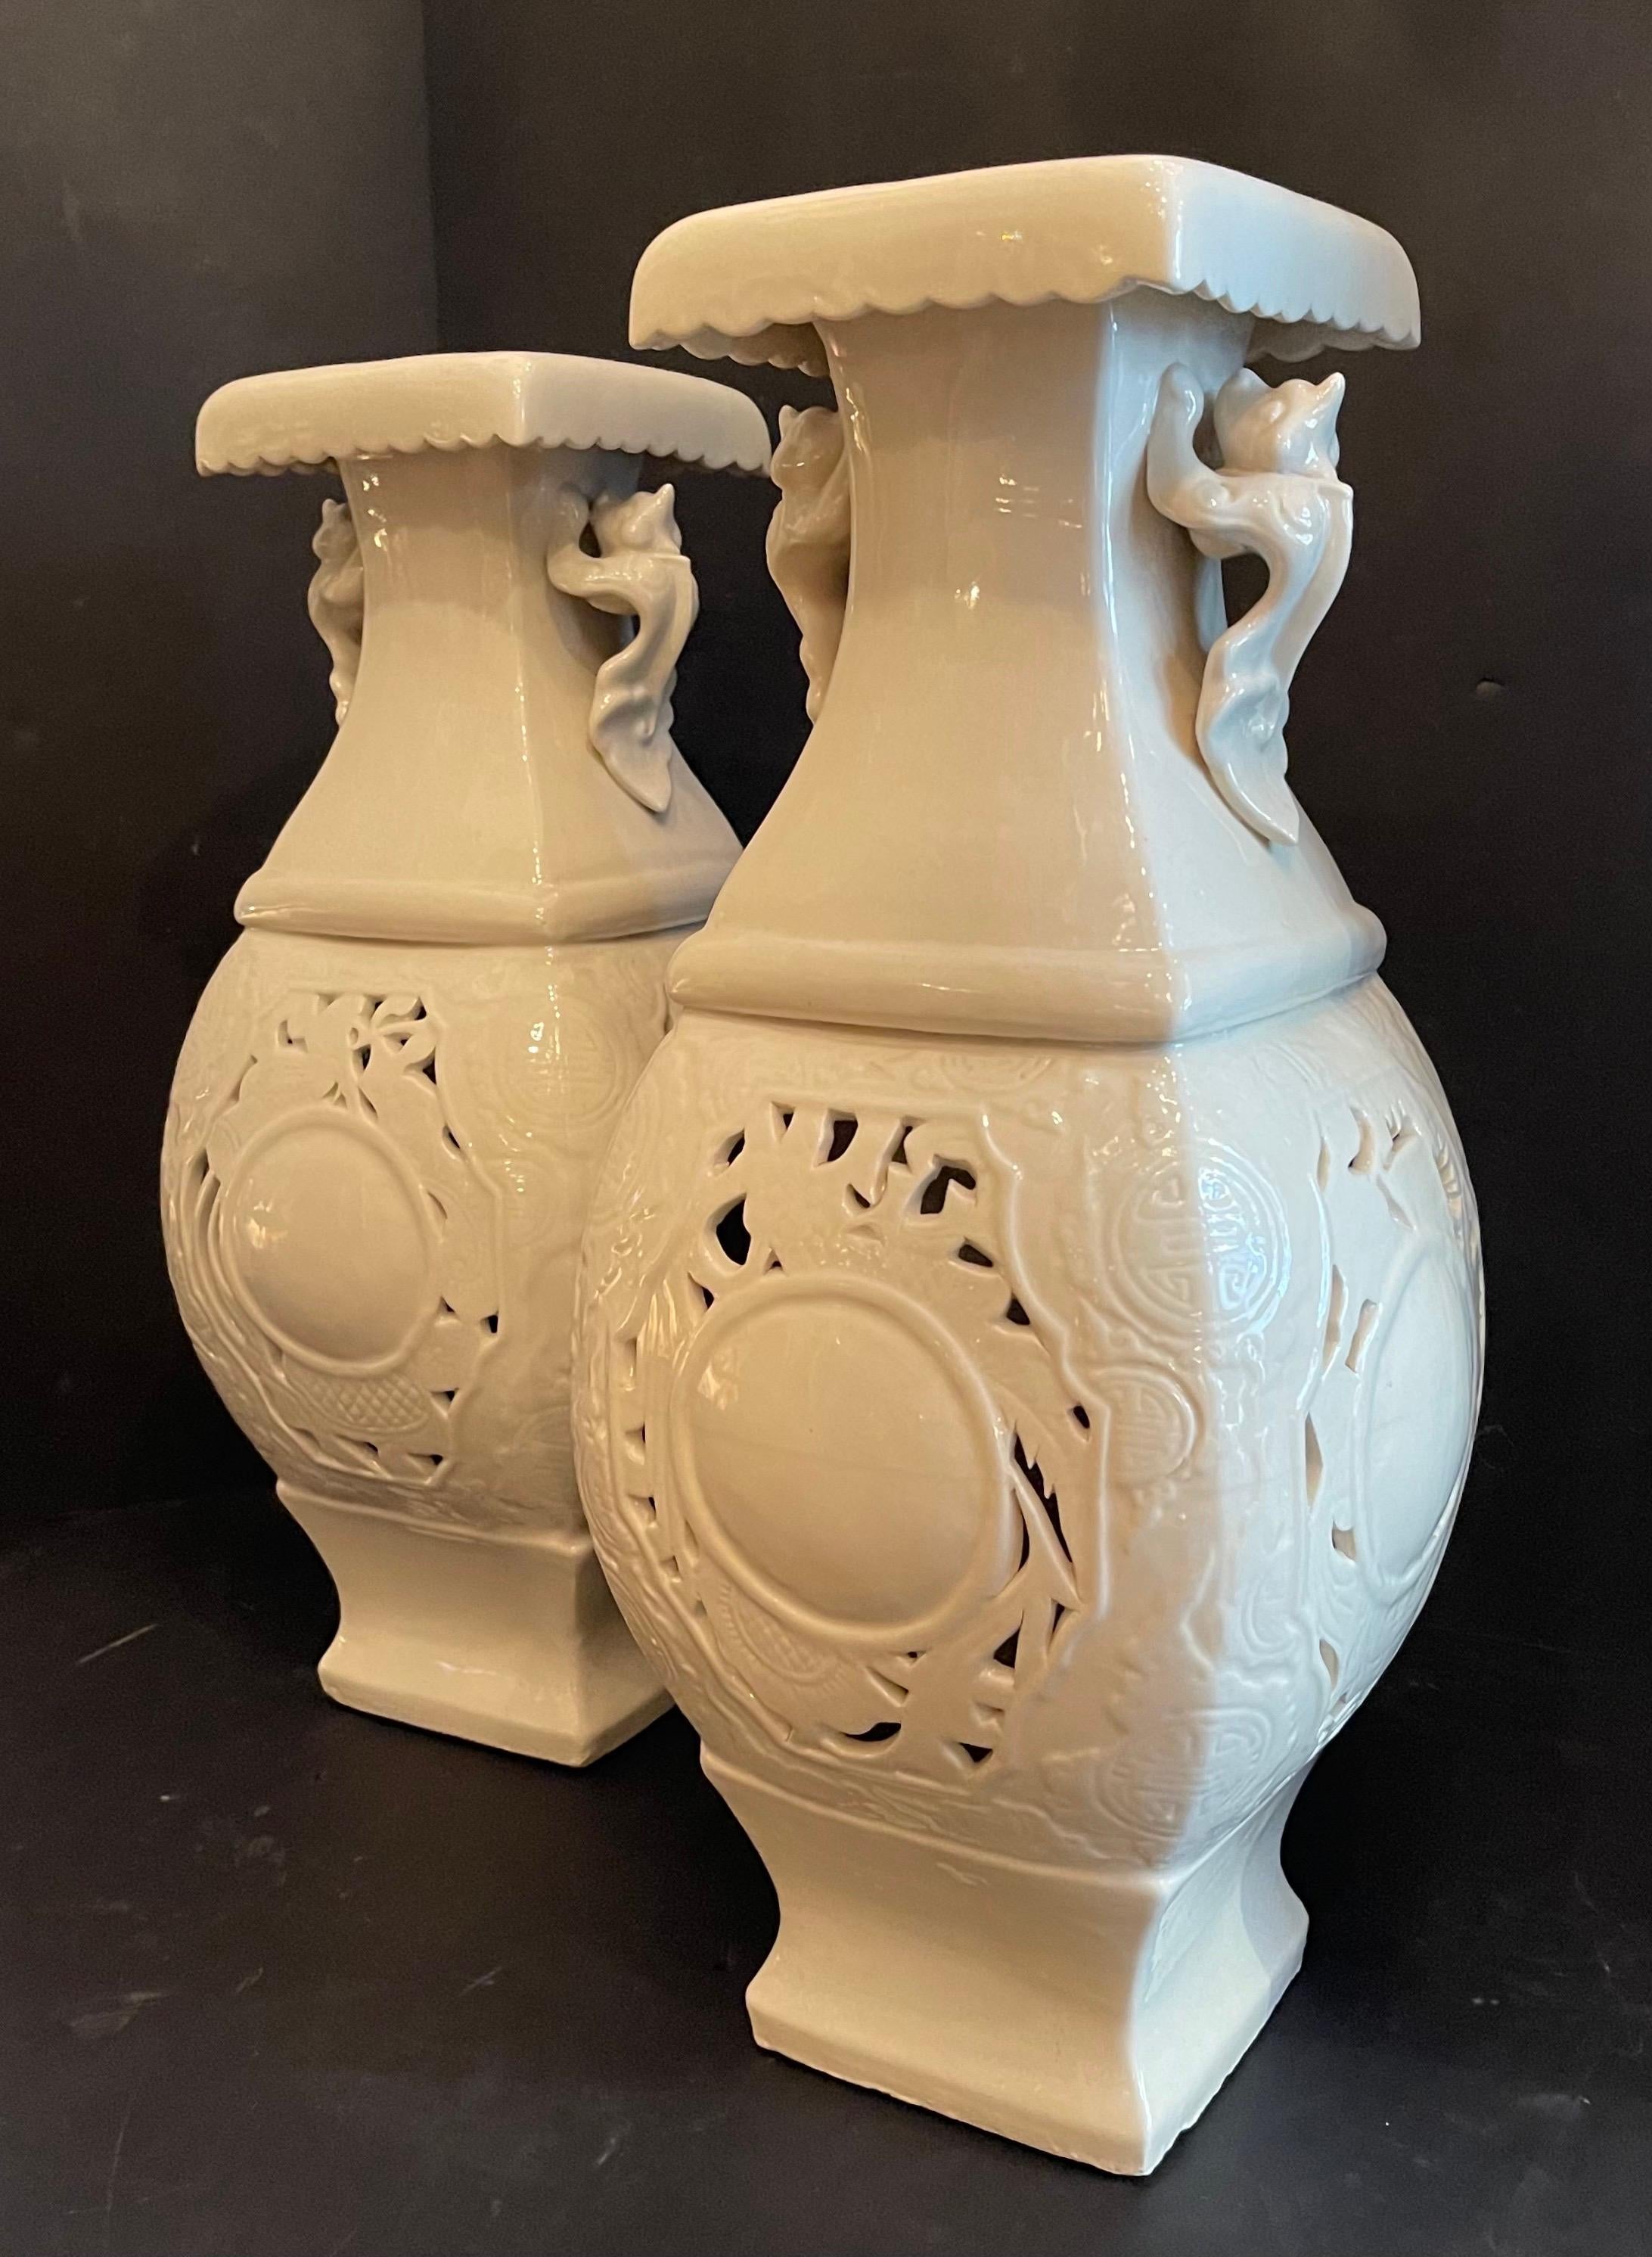 Une merveilleuse paire de vases / urnes monumentaux en porcelaine de Chine asiatique / chinoise
Acheté au showroom de Lorin Marsh NYC.